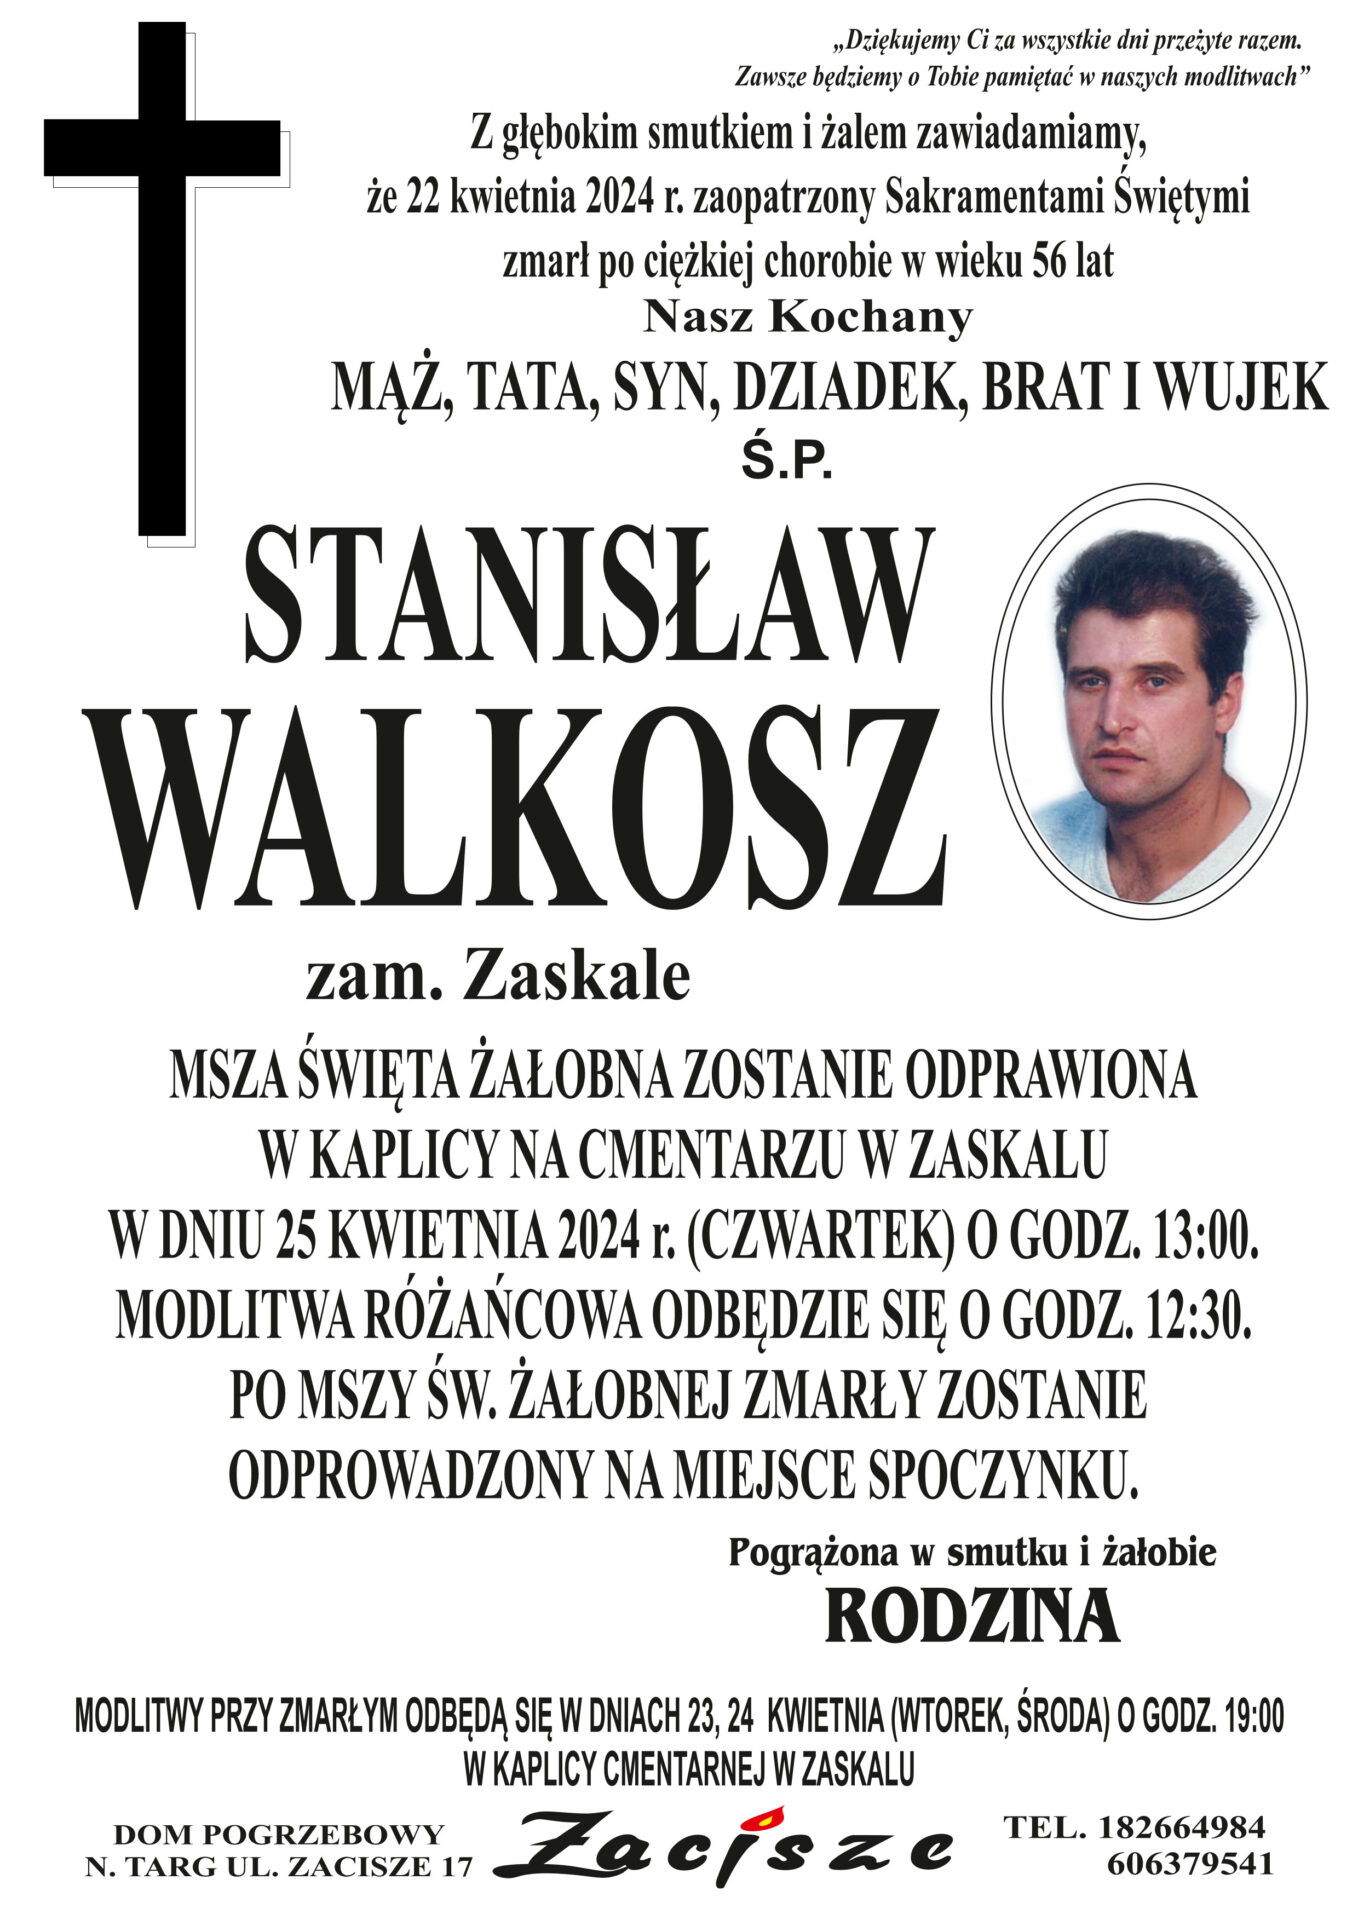 Stanisław Walkosz